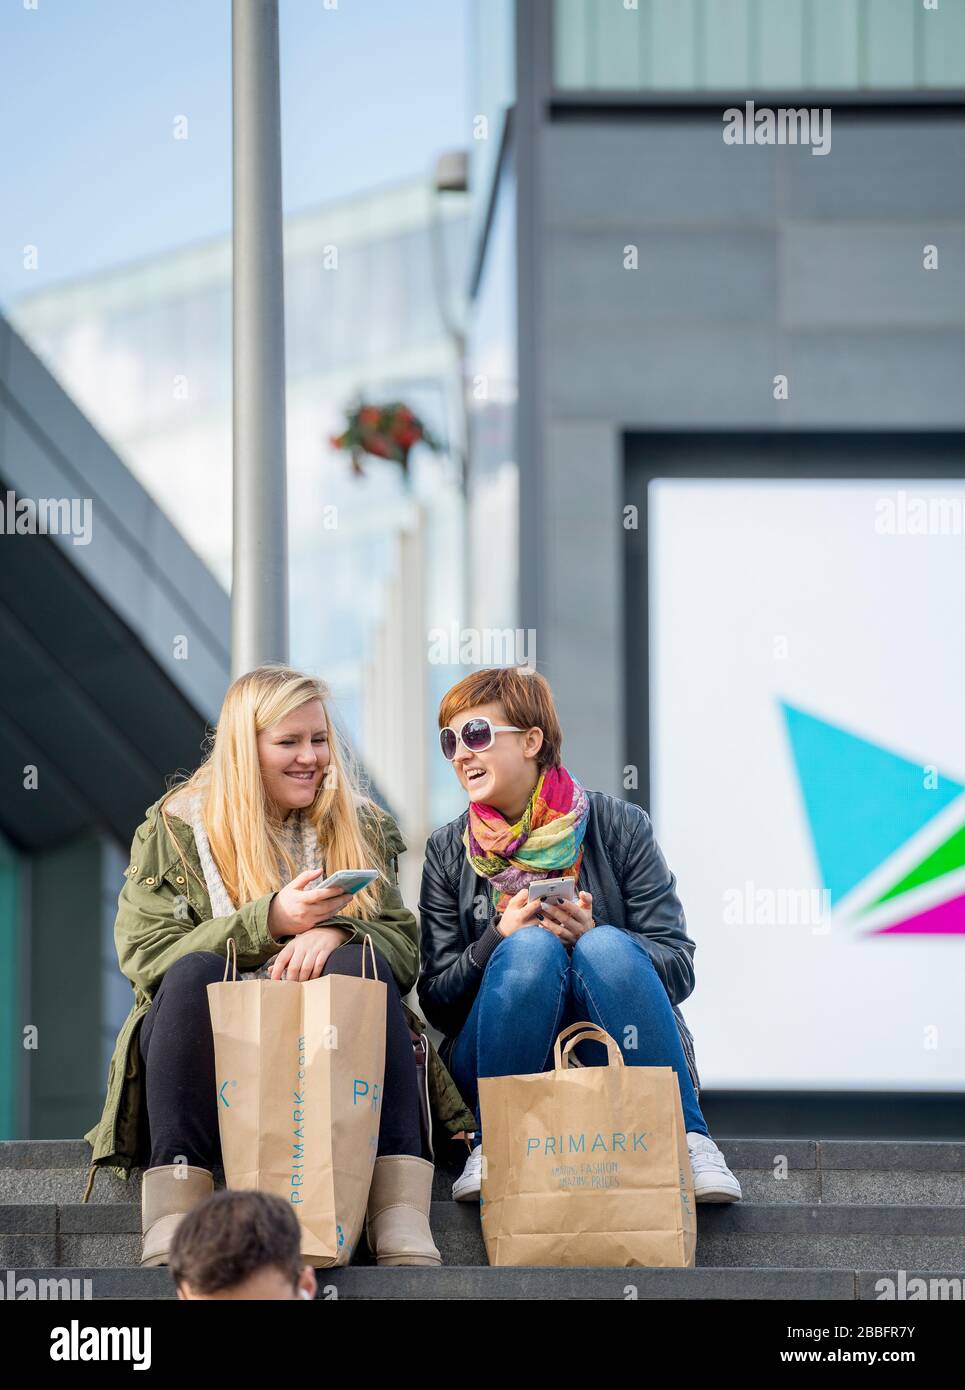 Zwei Freunde nehmen sich eine Sitzruhe und teilen einen Witz beim Einkaufen im Westfield Shopping Center, Stratford. Komplett mit Einkaufstaschen und Telefonen. Stockfoto